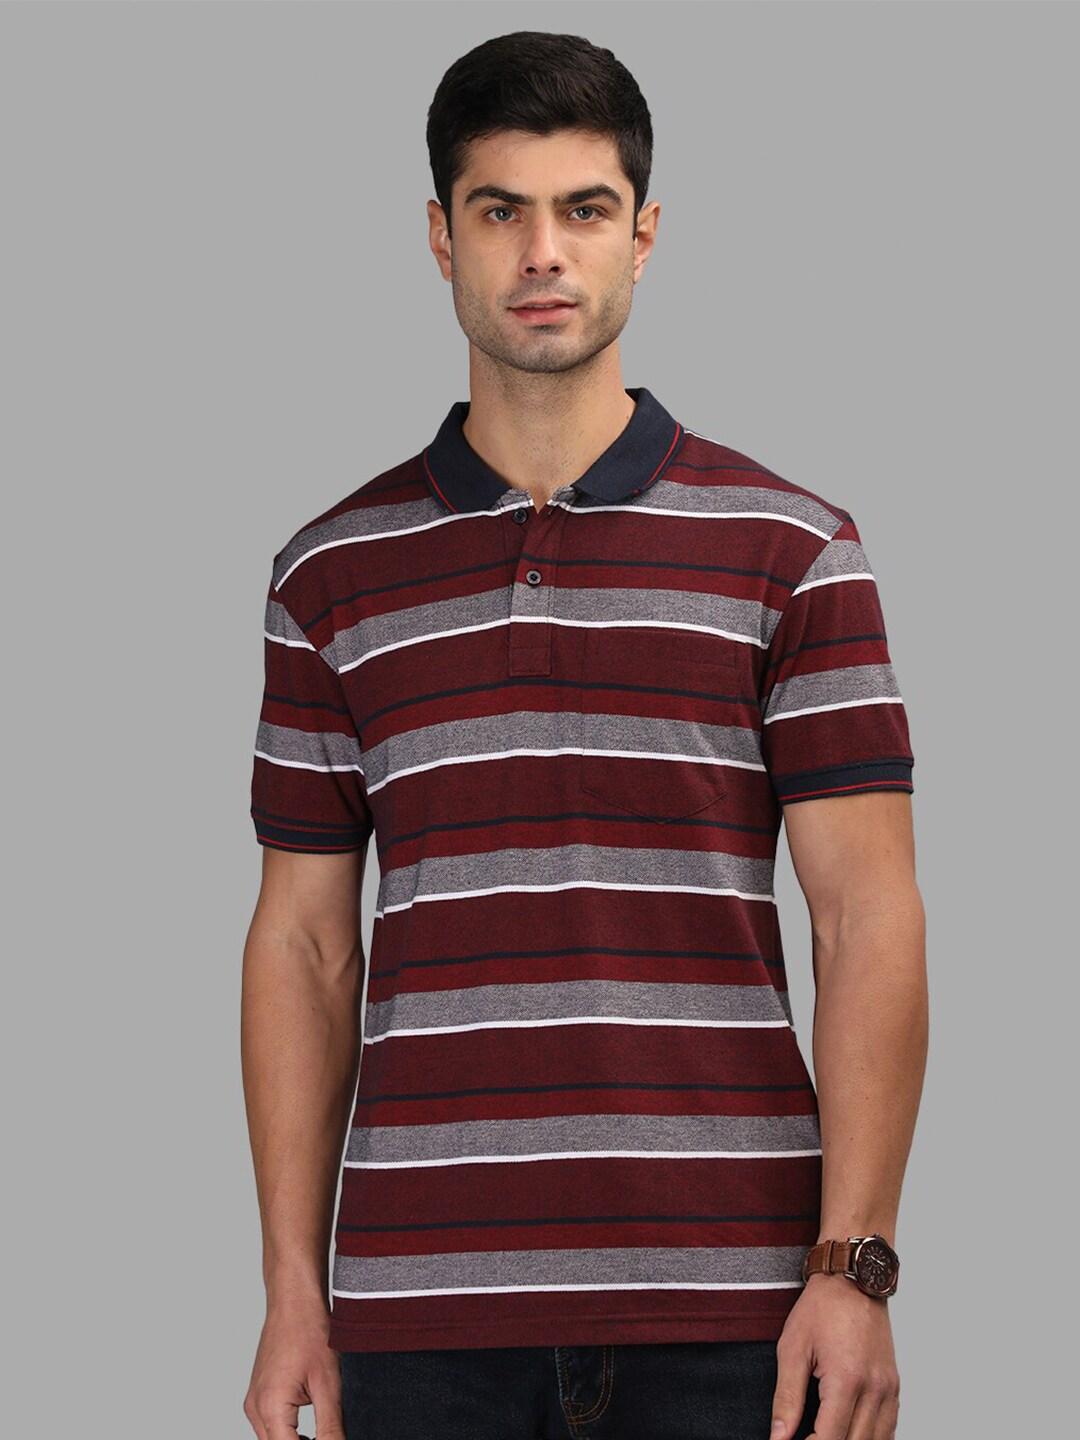 chkokko-striped-polo-collar-cotton-t-shirt